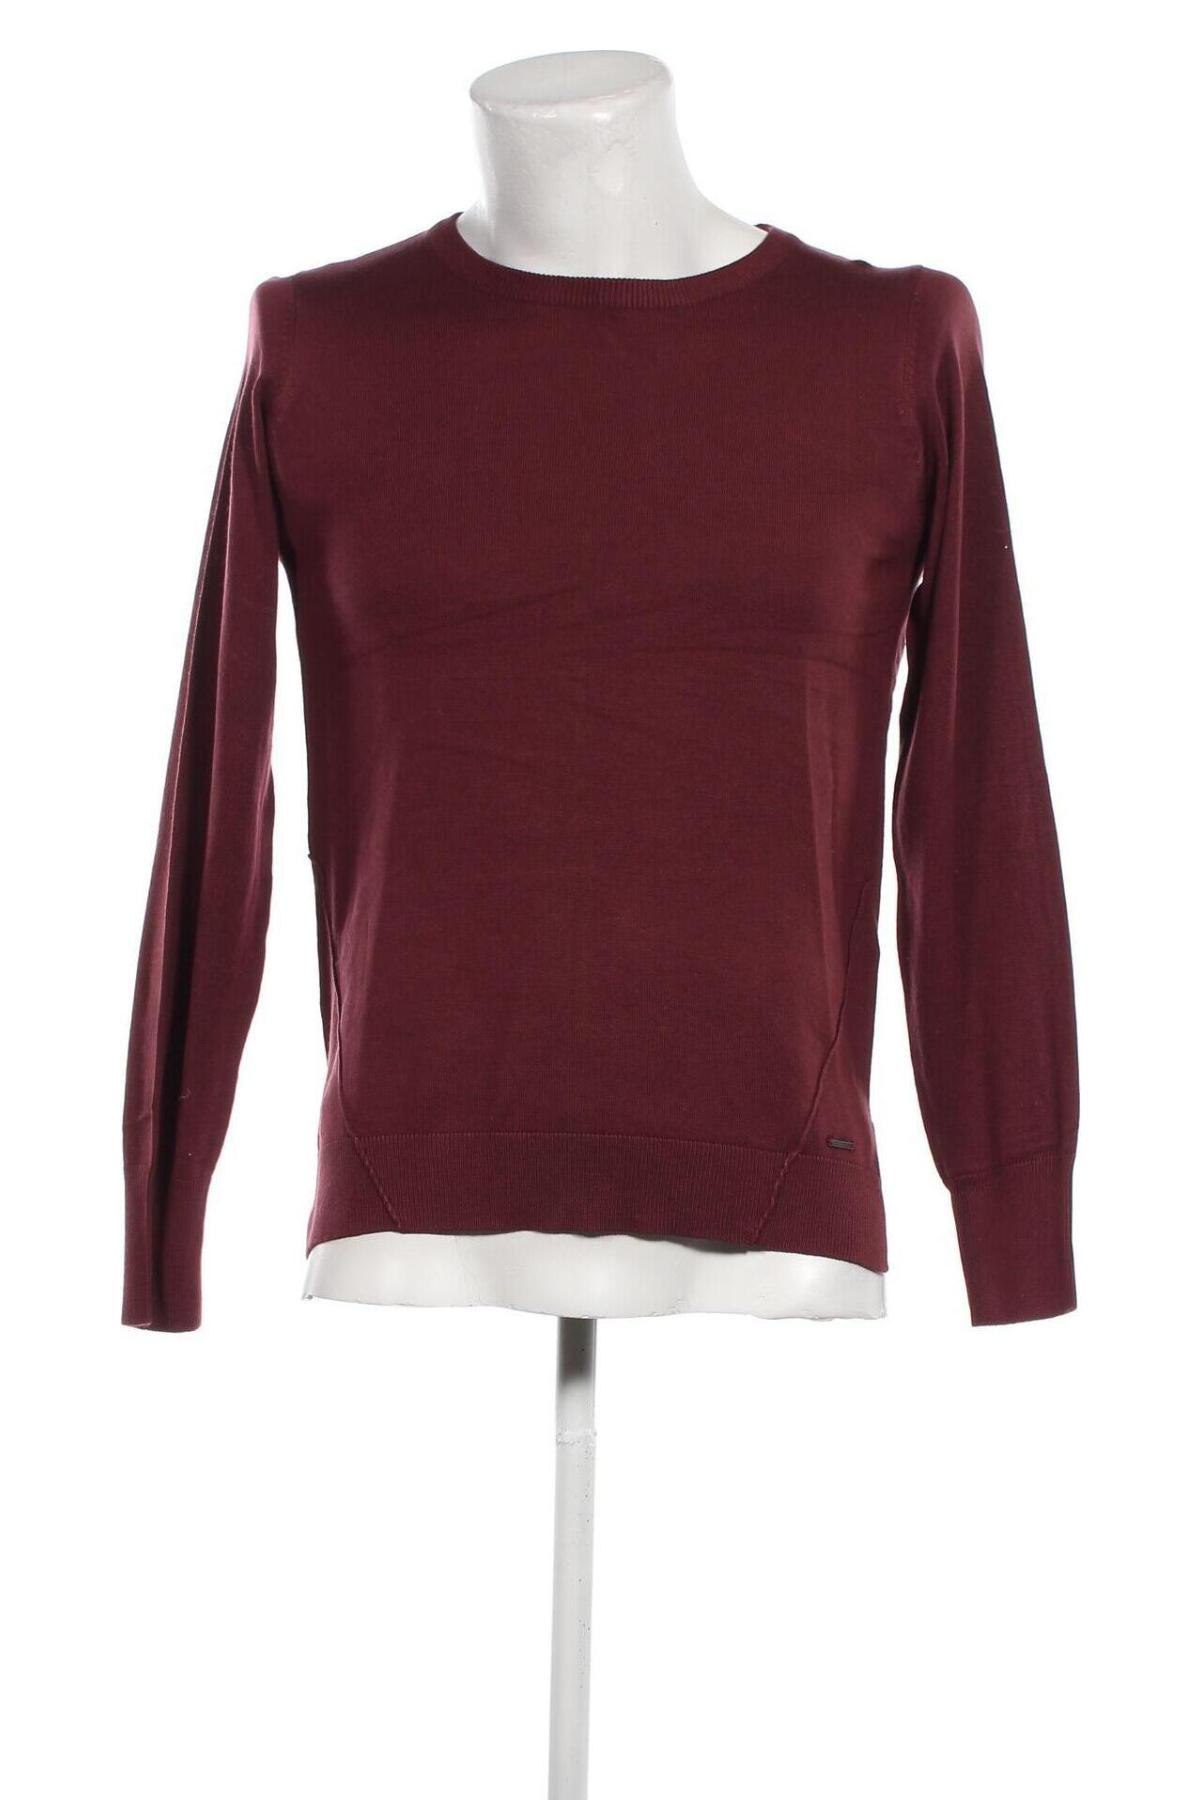 Ανδρικό πουλόβερ Oxmo, Μέγεθος S, Χρώμα Κόκκινο, Τιμή 10,20 €